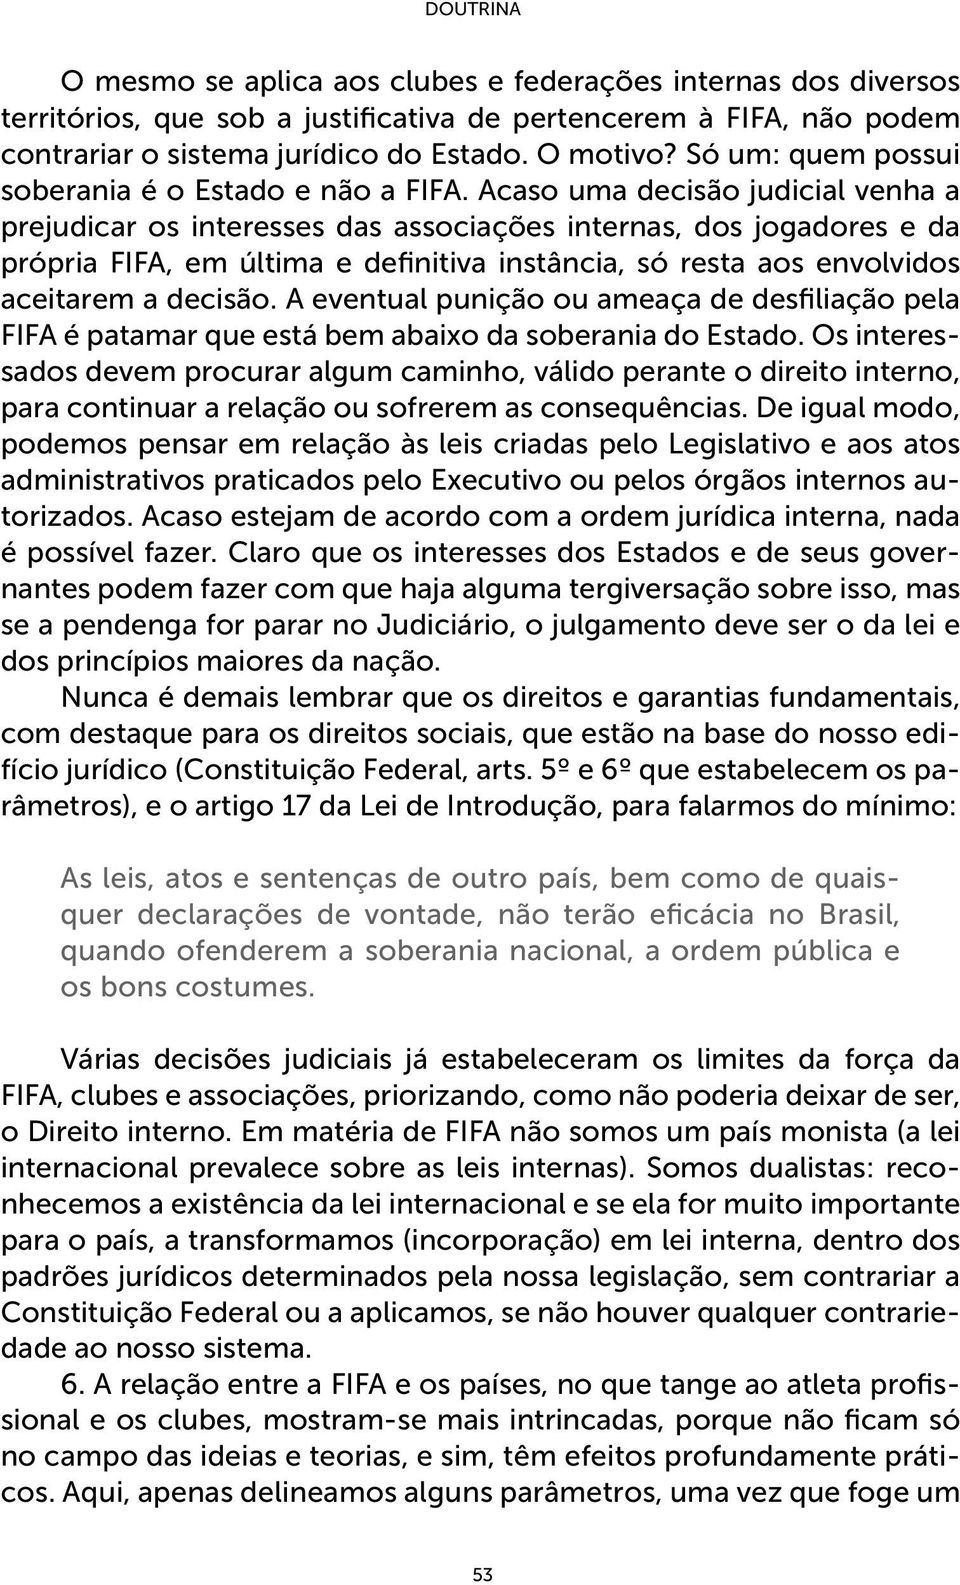 Acaso uma decisão judicial venha a prejudicar os interesses das associações internas, dos jogadores e da própria FIFA, em última e definitiva instância, só resta aos envolvidos aceitarem a decisão.